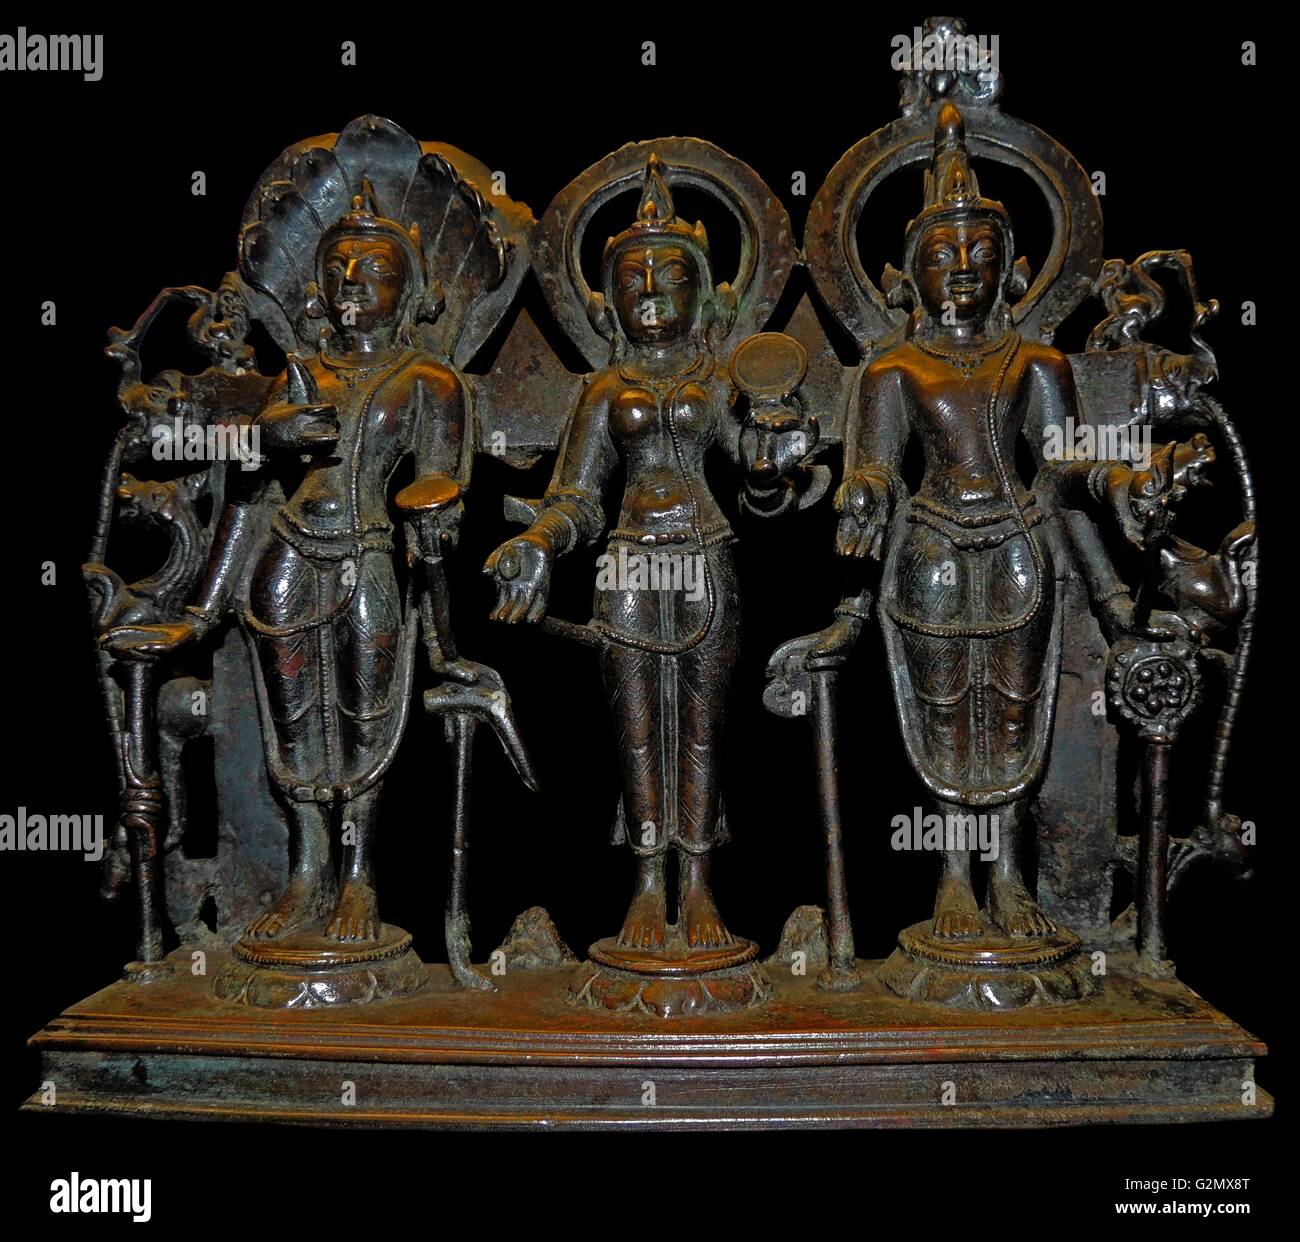 Balarama, Lakshmi und Vasudeva. Östlichen Indien, vielleicht Imadpur, Hohenstadt, Bengalen. Vom im 48. Jahr der Mahipala (über AD 1043). Balarama, mit Pflug und Schlange Hauben, Bruder des Krishna, hier auf der rechten Seite als vasudeva dargestellt. In der Mitte des bronze Gruppe ist Lakshmi, die Shakti oder weibliche Form von Vasudeva, ein Aspekt des Gottes Vishnu. Stockfoto